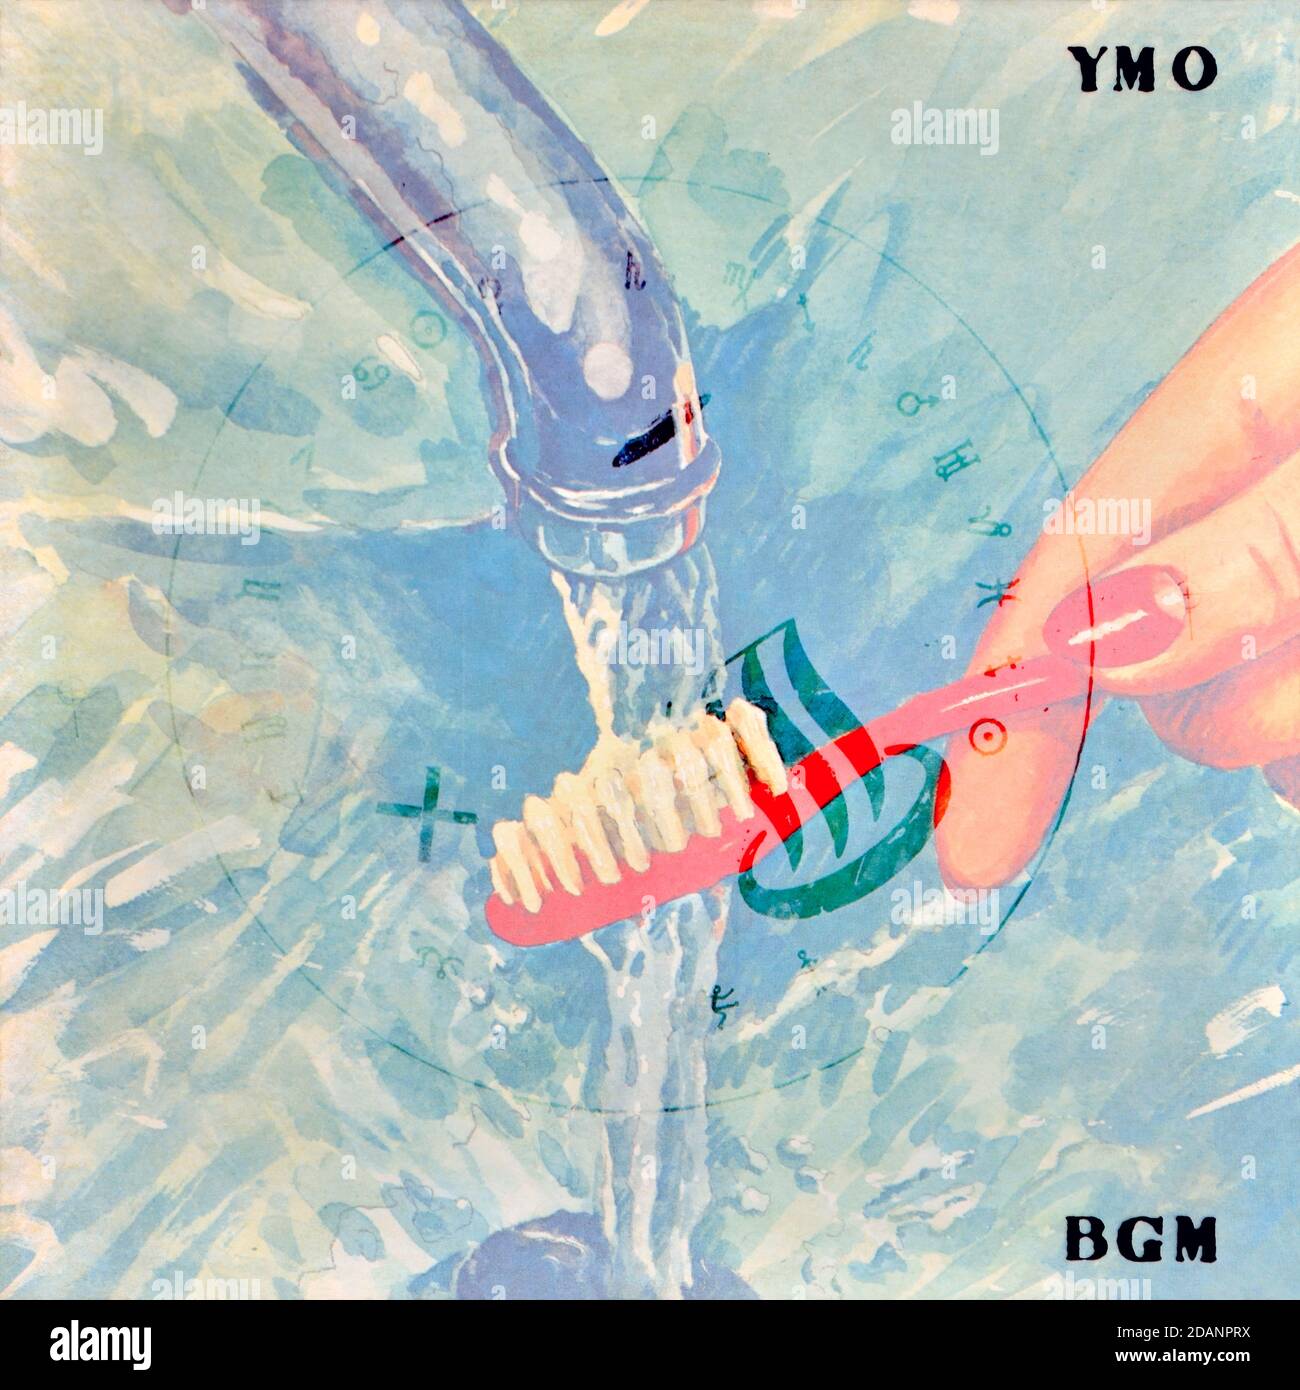 YMO - original vinyl album cover - BGM - 1981 Stock Photo